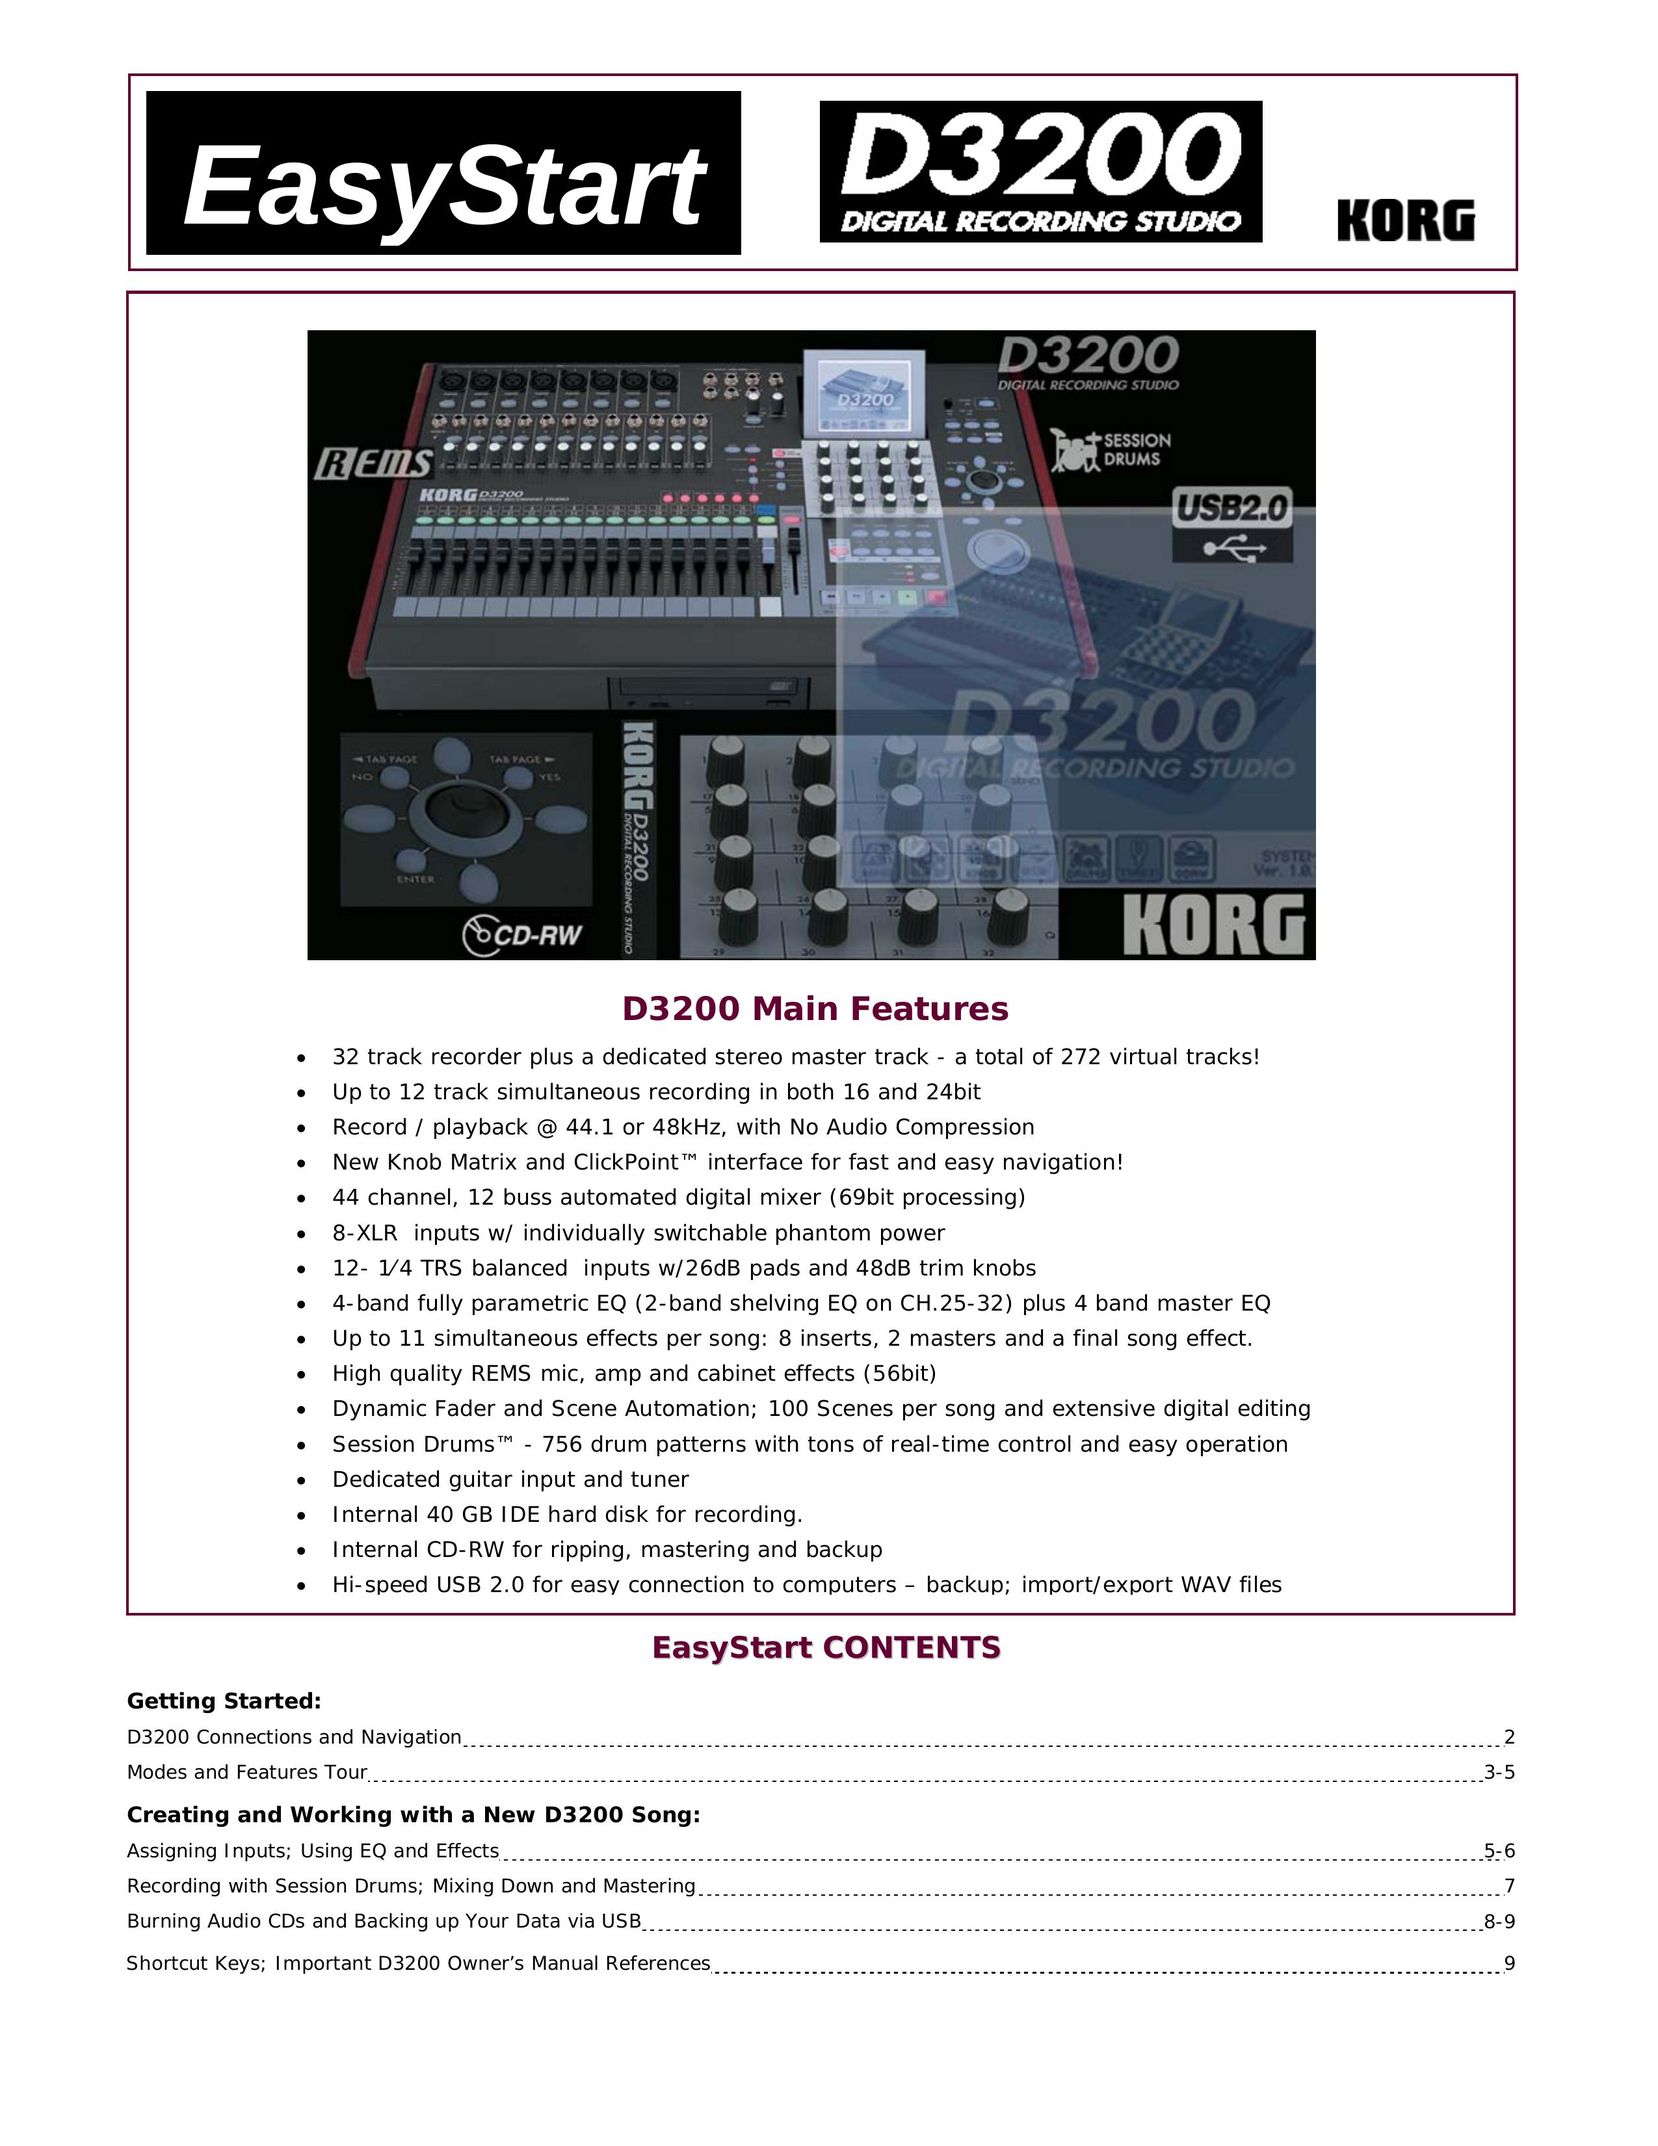 Korg D3200 Home Theater Server User Manual